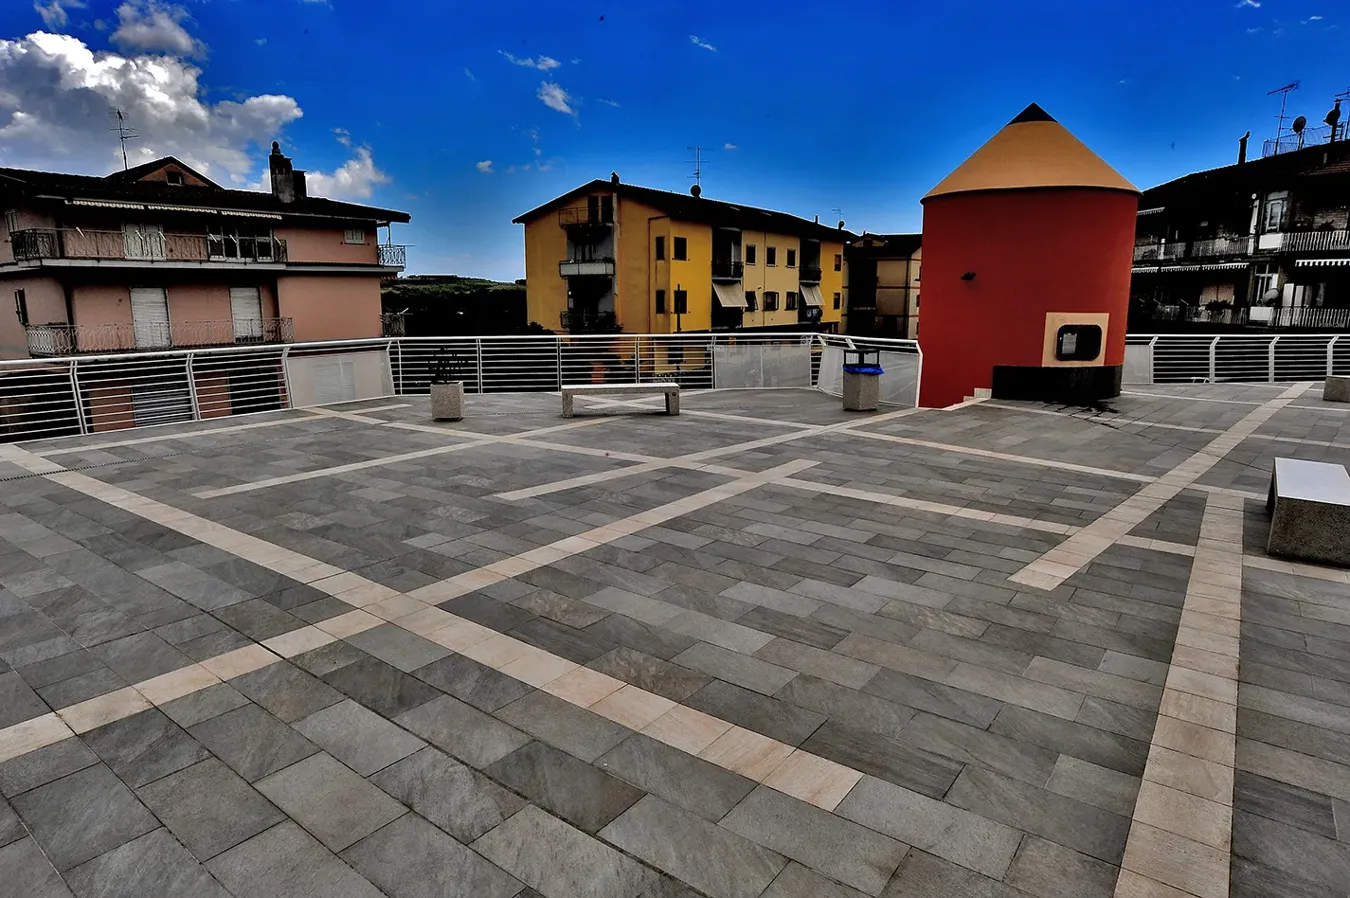 La Piazza Campigliano rénovée avec divers formats de carreaux de la collection Point, présentant un design attrayant et moderne qui valorise l'espace urbain environnant.